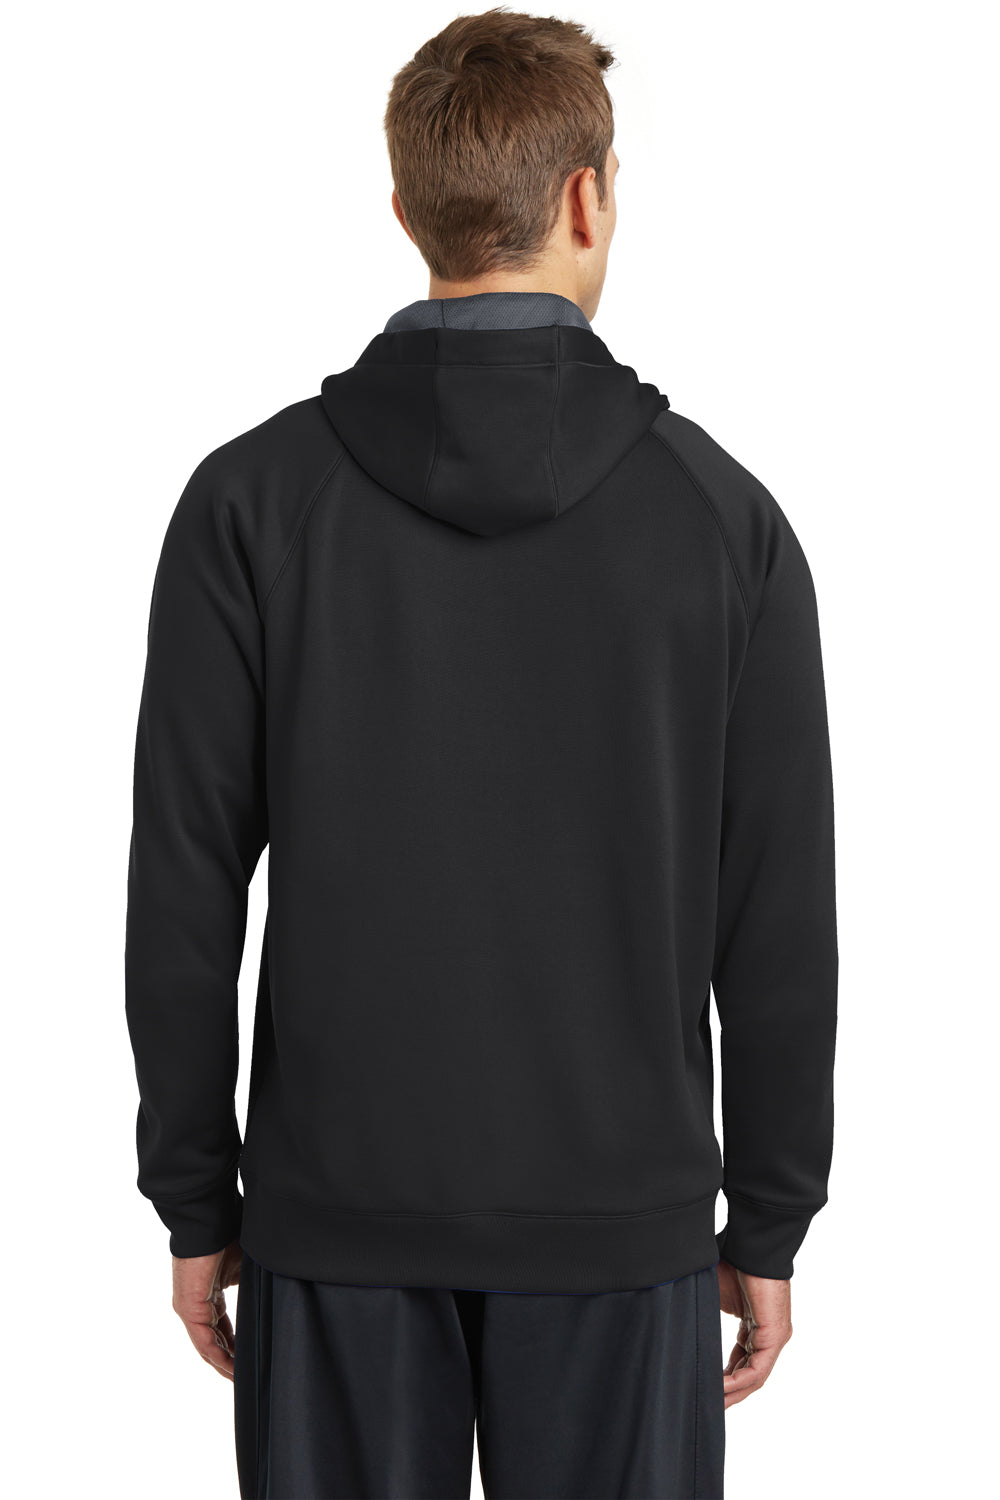 Sport-Tek ST250 Mens Tech Moisture Wicking Fleece Hooded Sweatshirt Hoodie Black Back